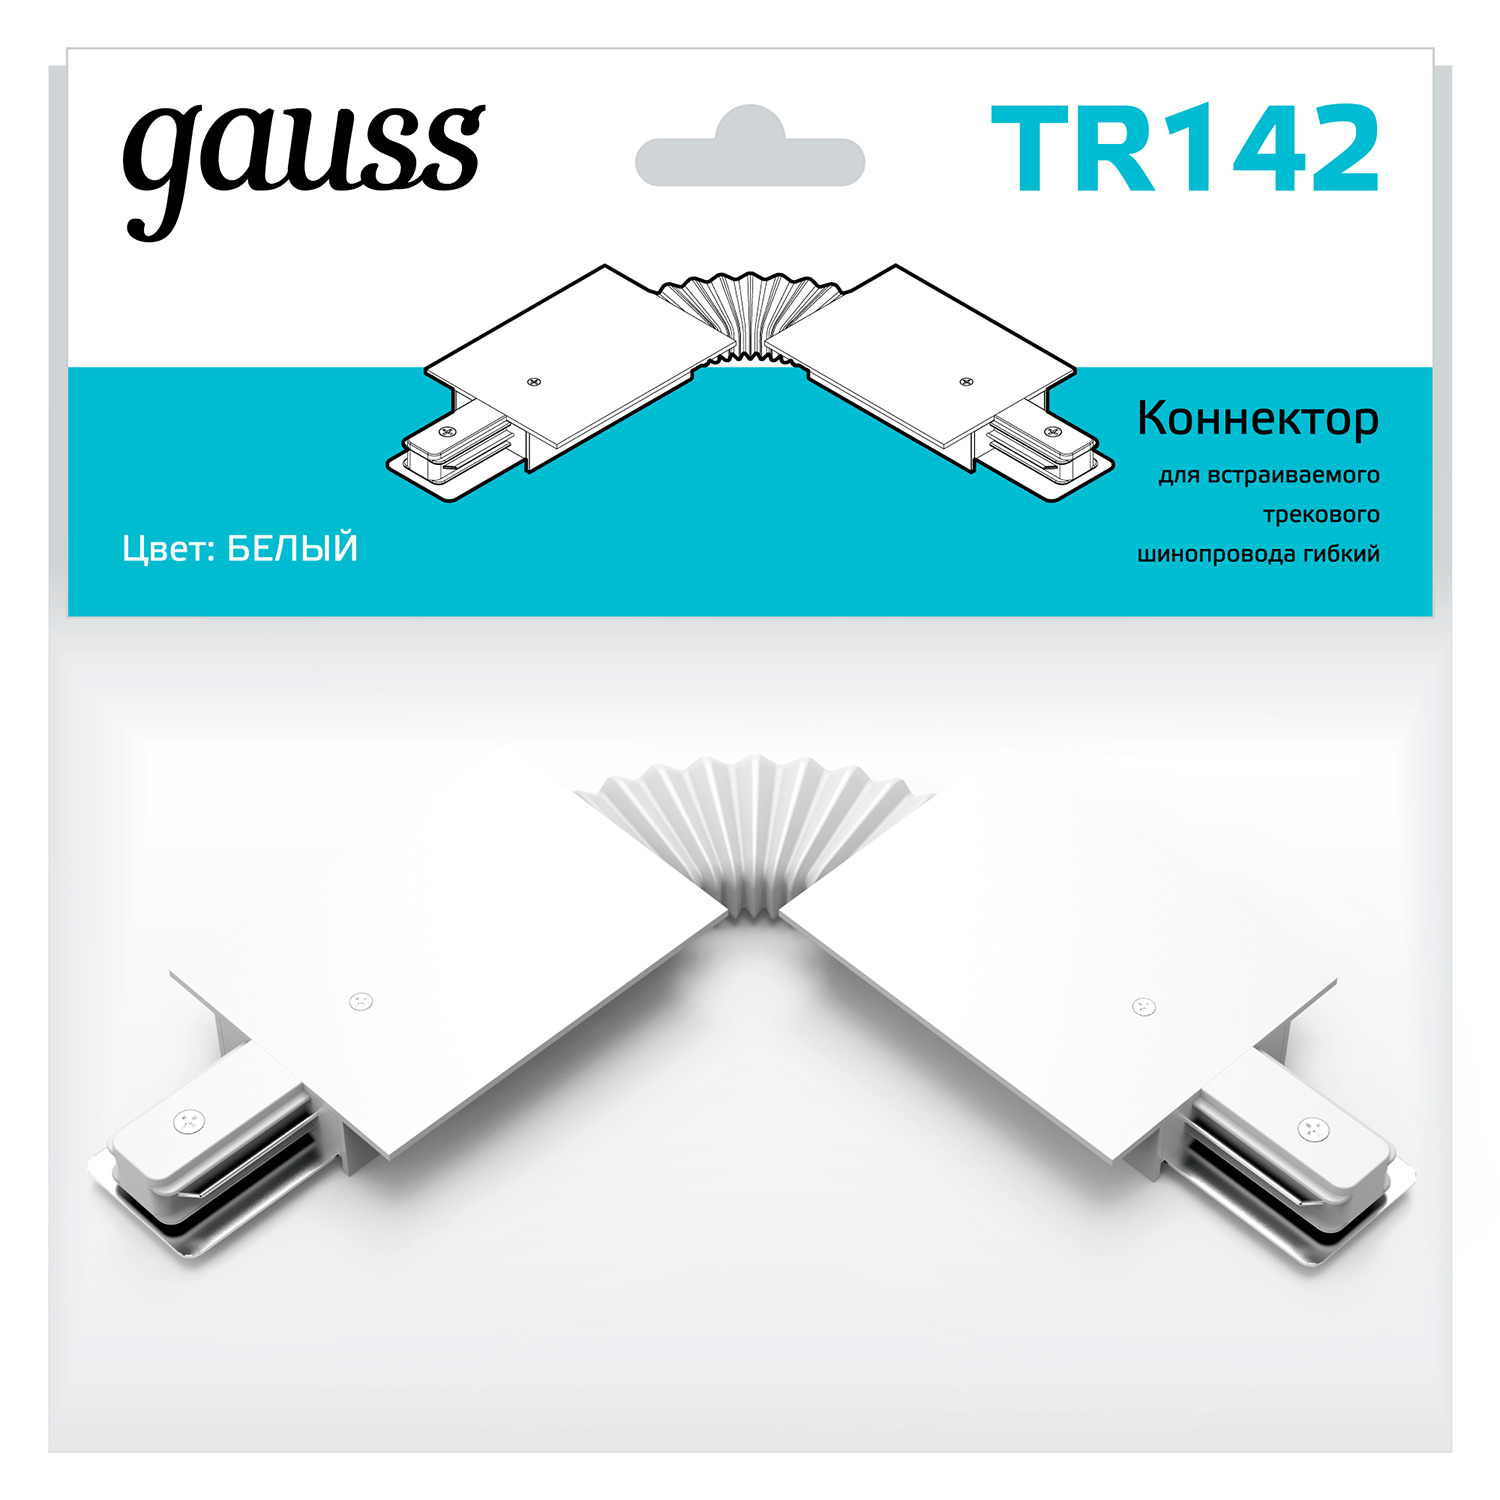 Коннектор Gauss для встраиваемых трековых шинопроводов гибкий (I) белый гибкий коннектор для трековых шинопроводов gauss